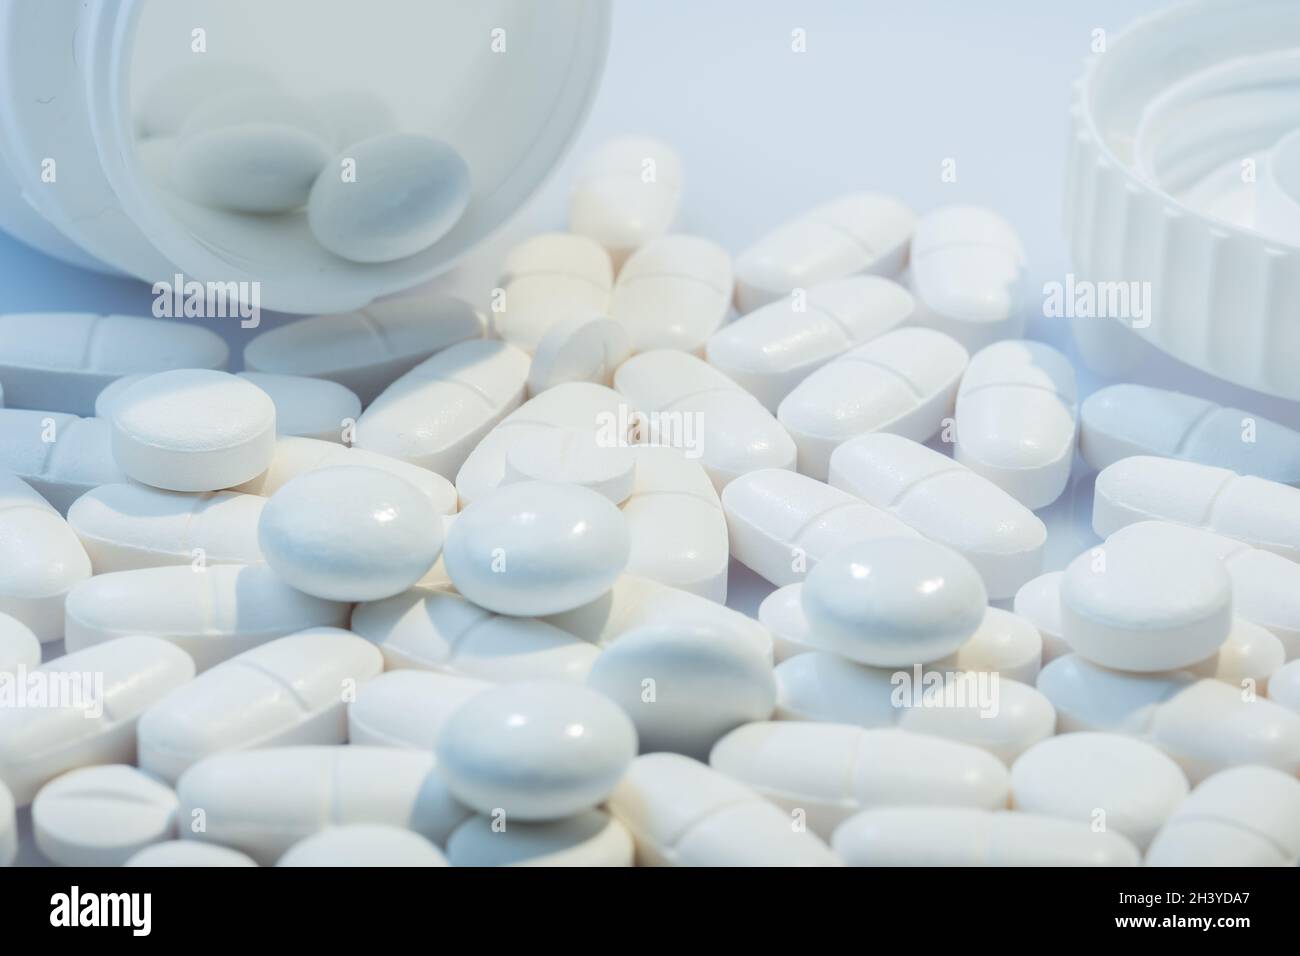 Helsinki / Finnland - 31. OKTOBER 2021: Nahaufnahme von weißen Pillen vor weißem Hintergrund. Weißer Pillenbehälter im Hintergrund. Stockfoto